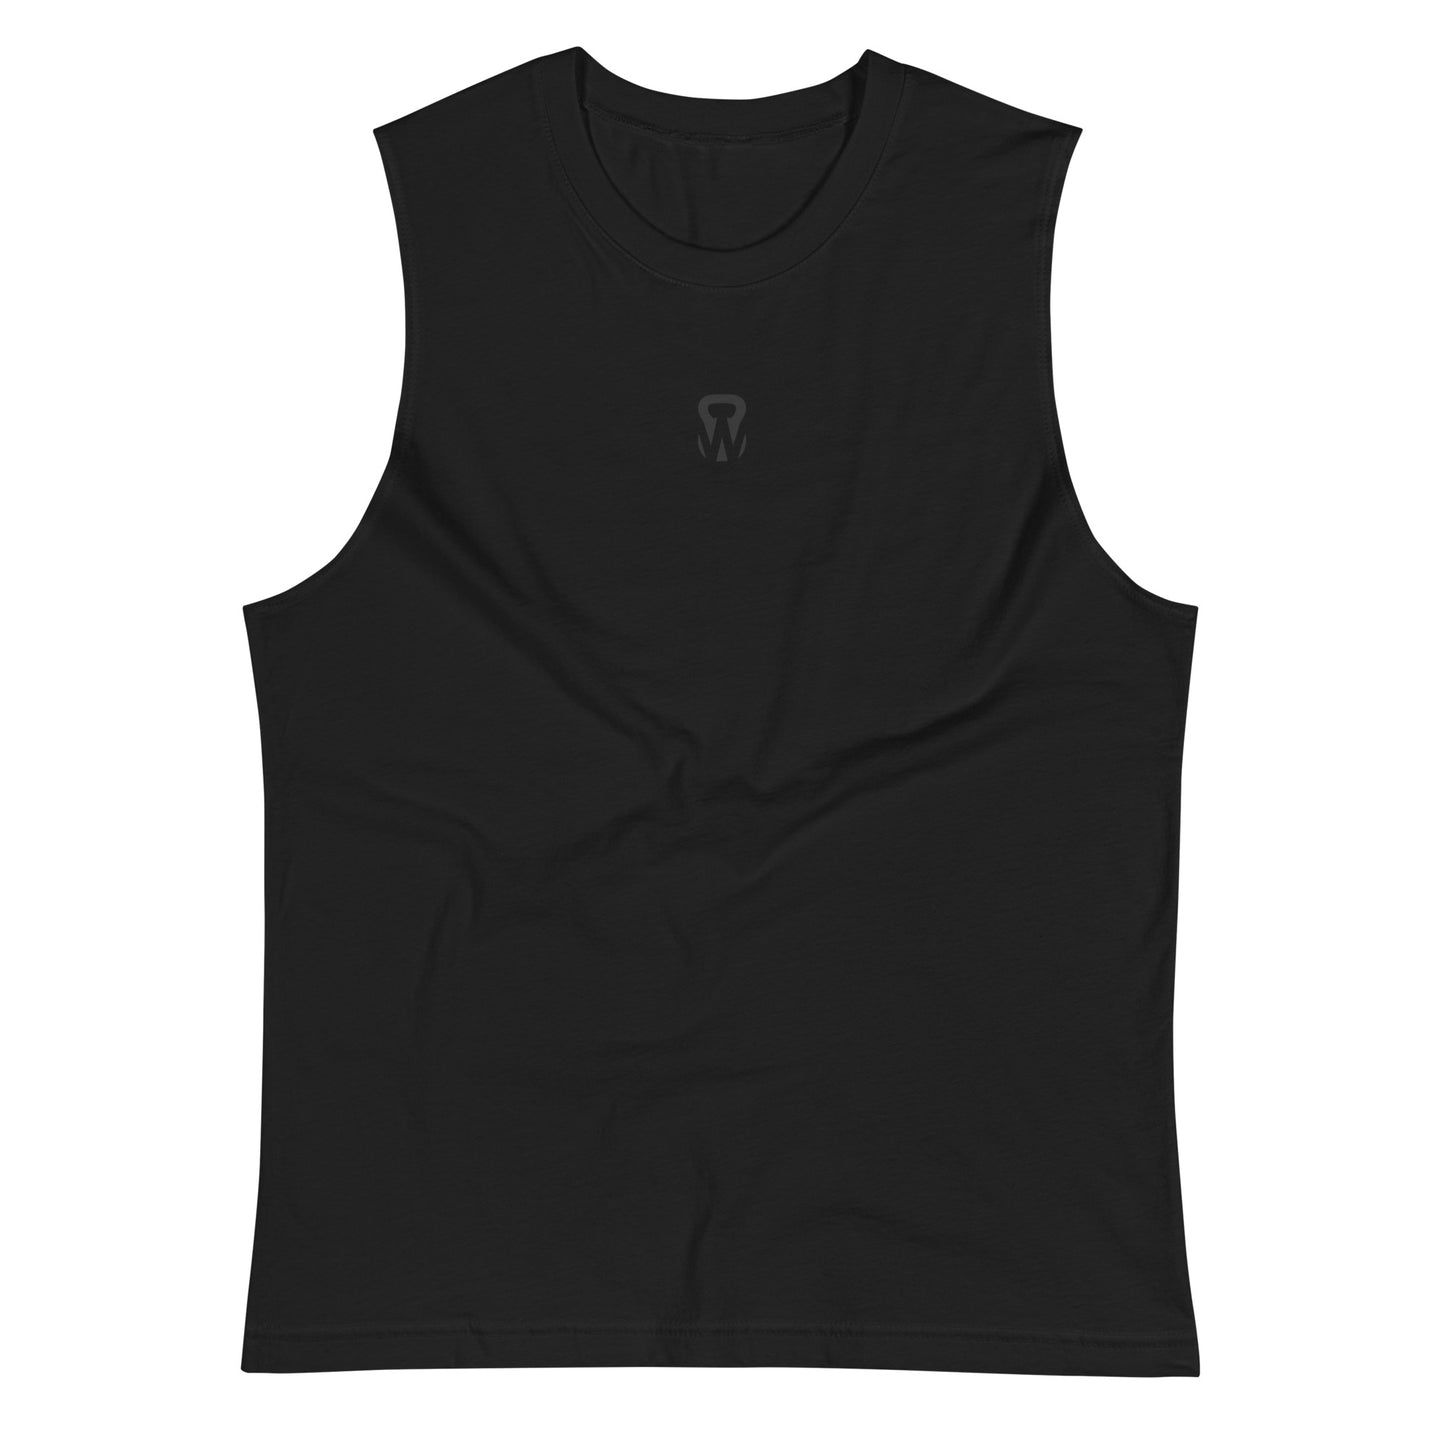 WODprep Kettlebell Muscle Shirt - Black